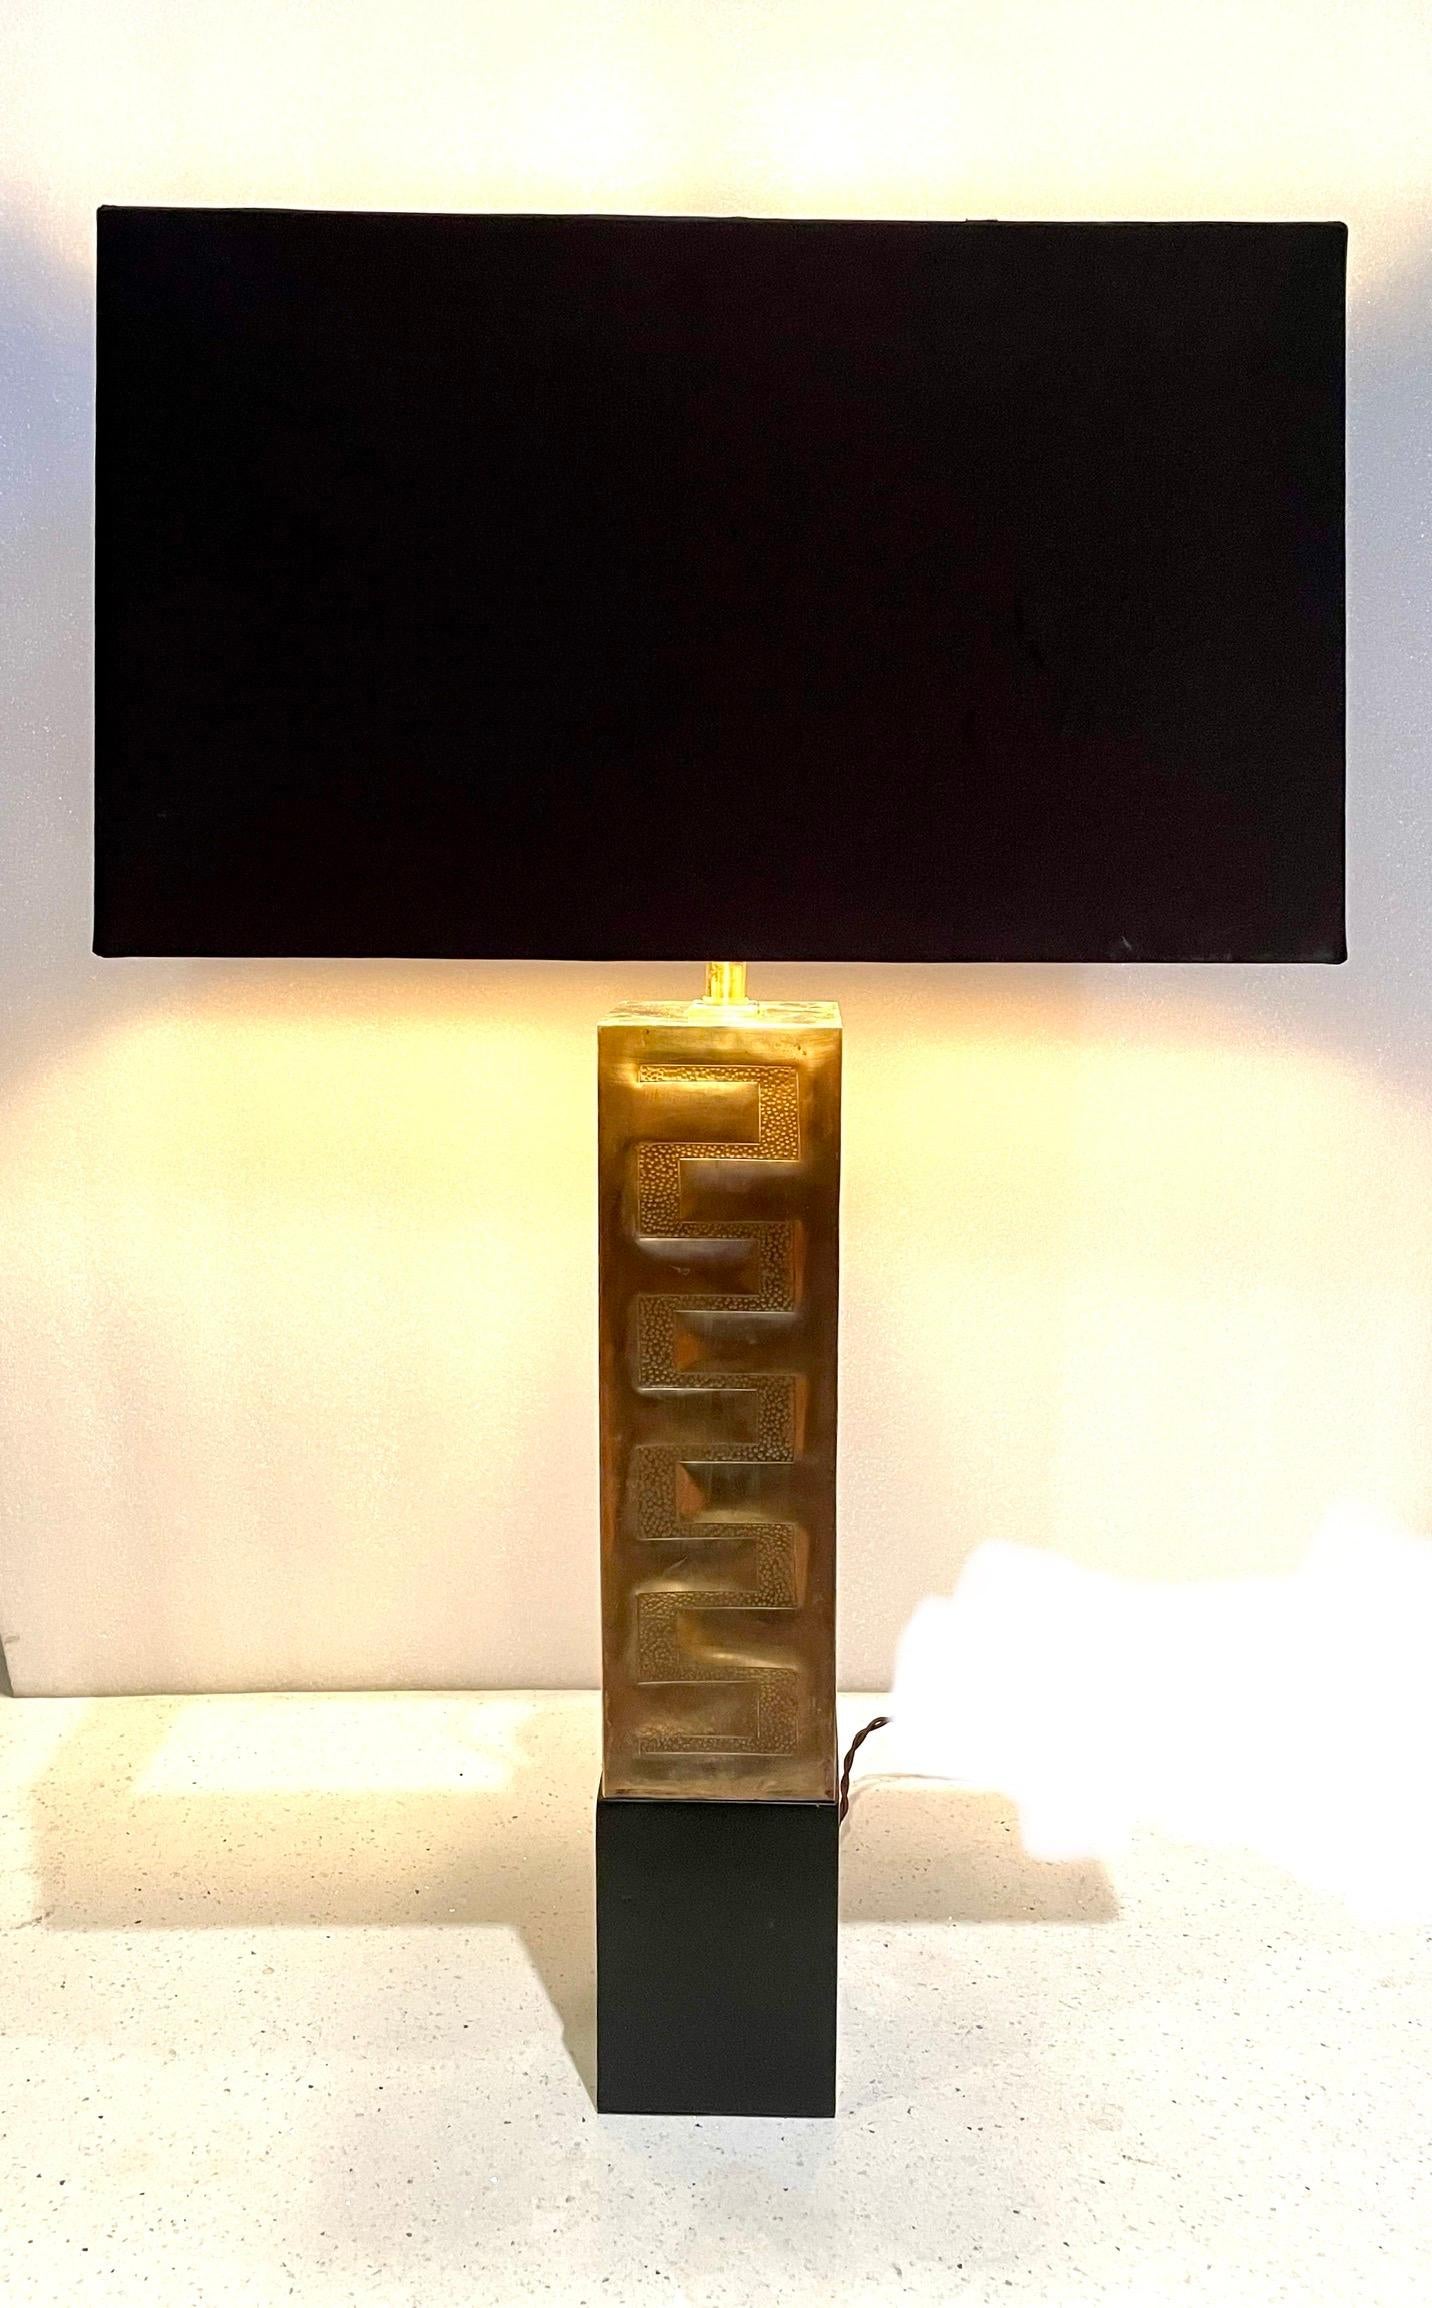 Lampe unique en son genre, base en laiton poli sur une base en bois laqué noir. L'abat-jour est inclus et mesure 16